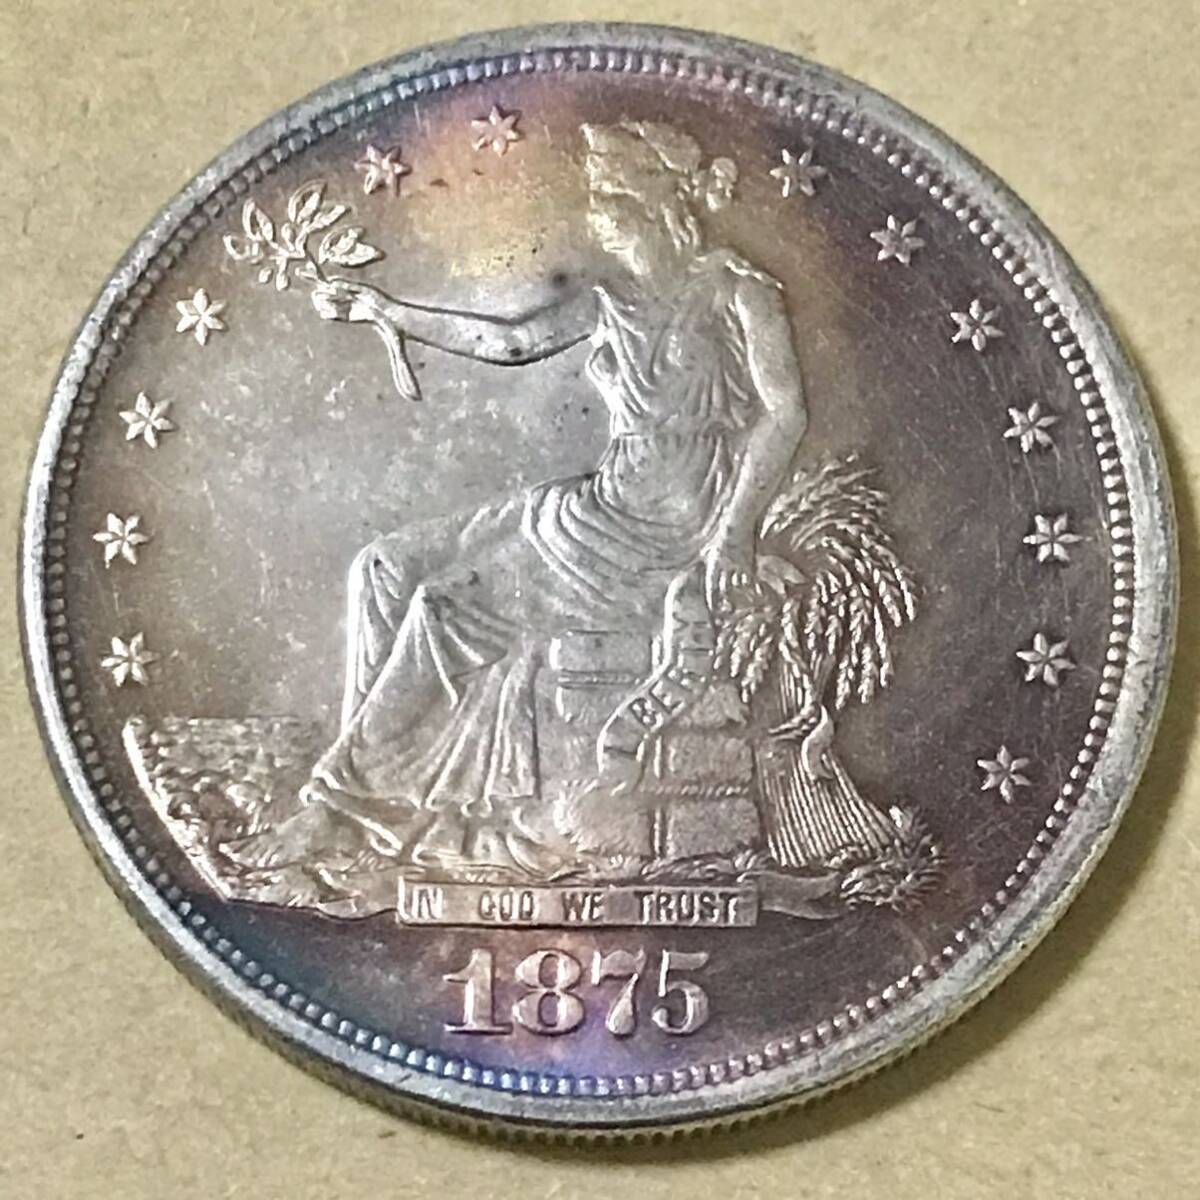 銀貨 1875年 アメリカ 貿易銀 1ドル トレード ダラー 銀貨 イーグル アメリカ合衆国造幣局 サンフランシスコ 硬貨 古銭 貿易銀 コインの画像1